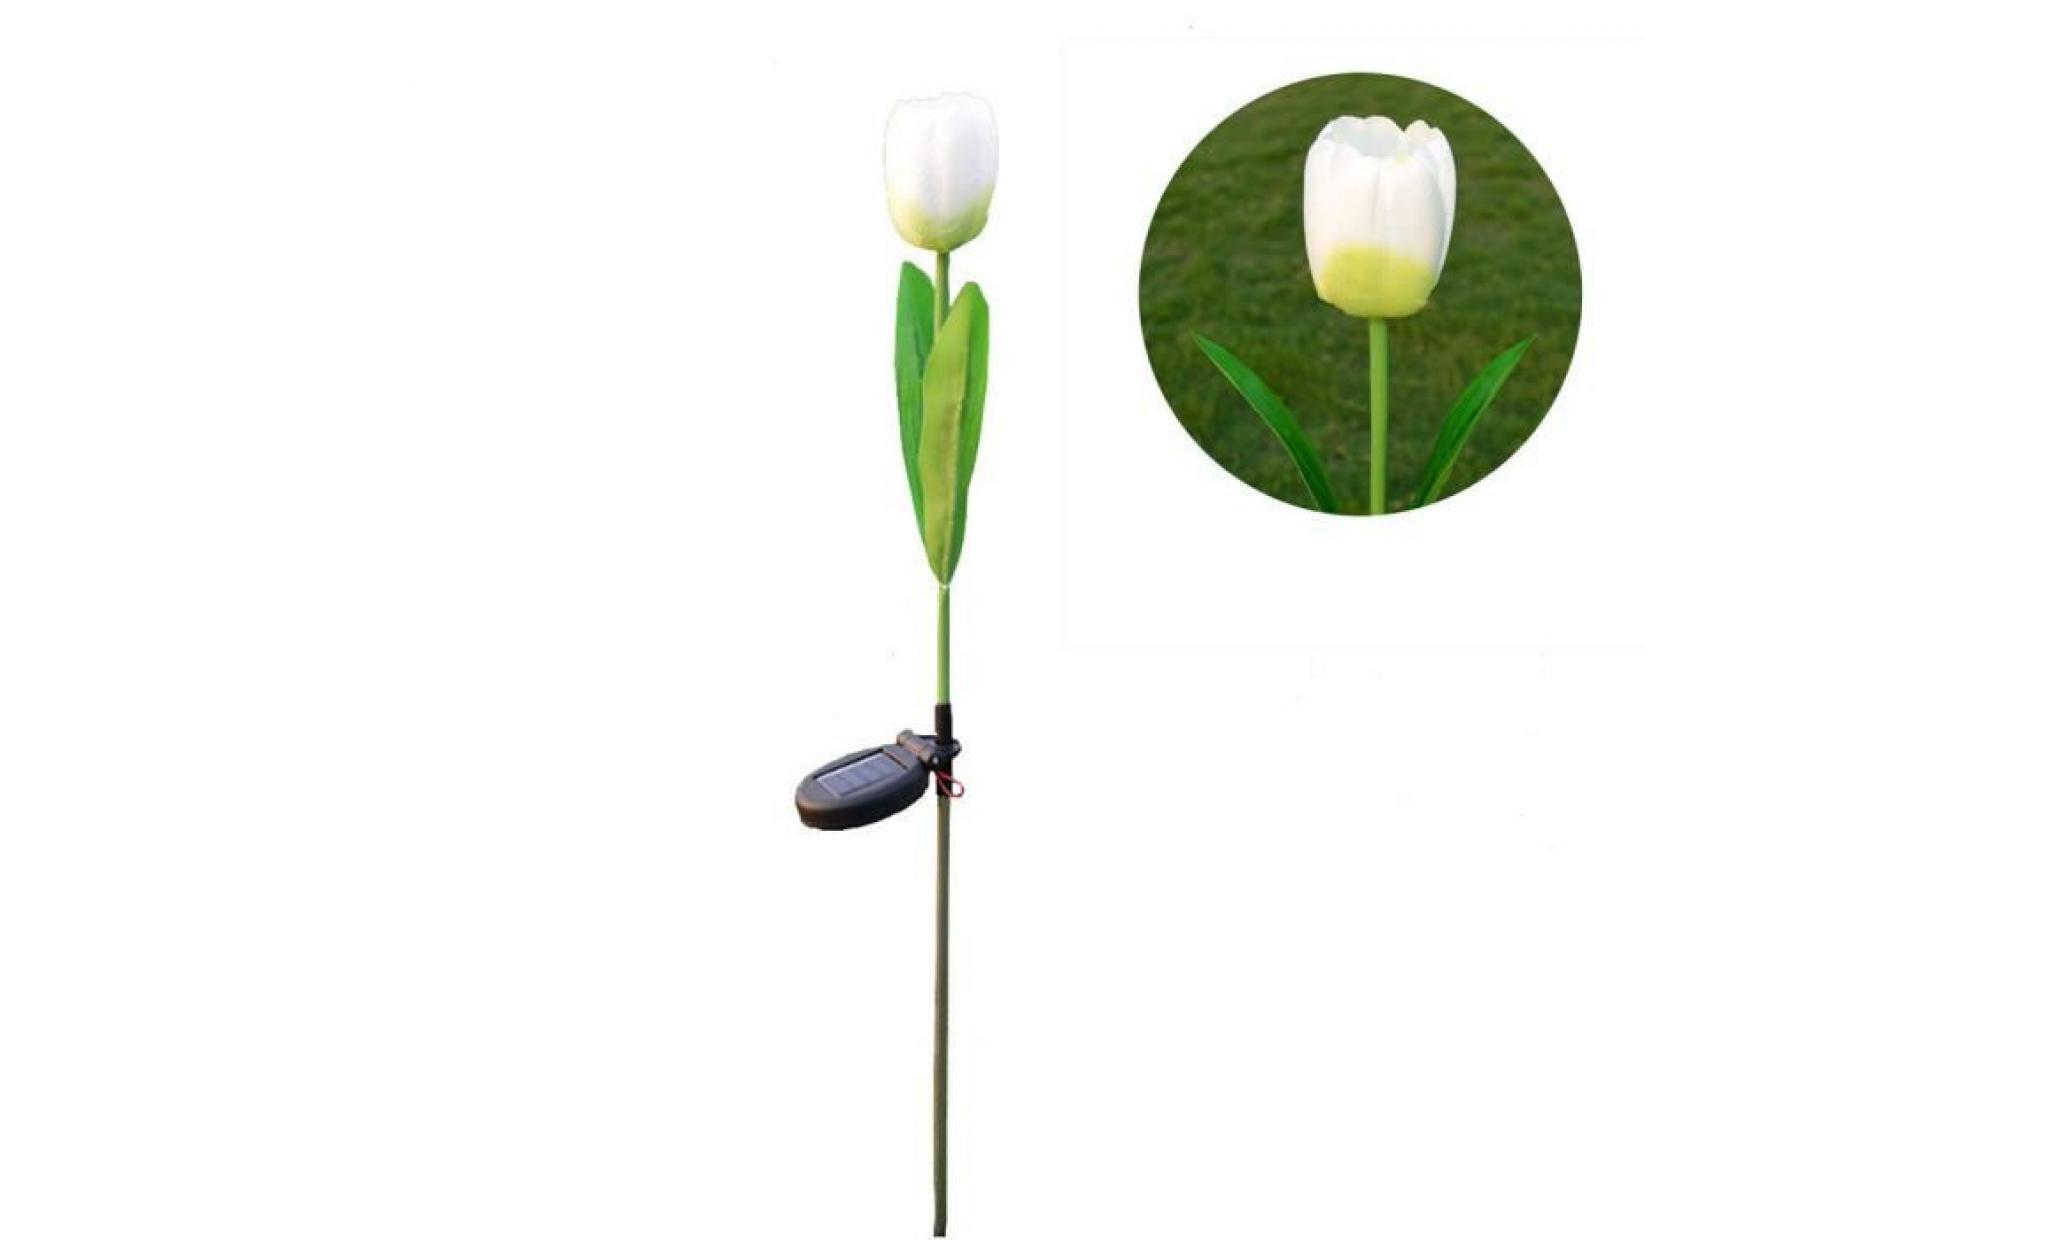 borne solaire 1 tête solaire led lampe décorative extérieure de pelouse 1 tête tulipe fleur lumière #la 115 pas cher